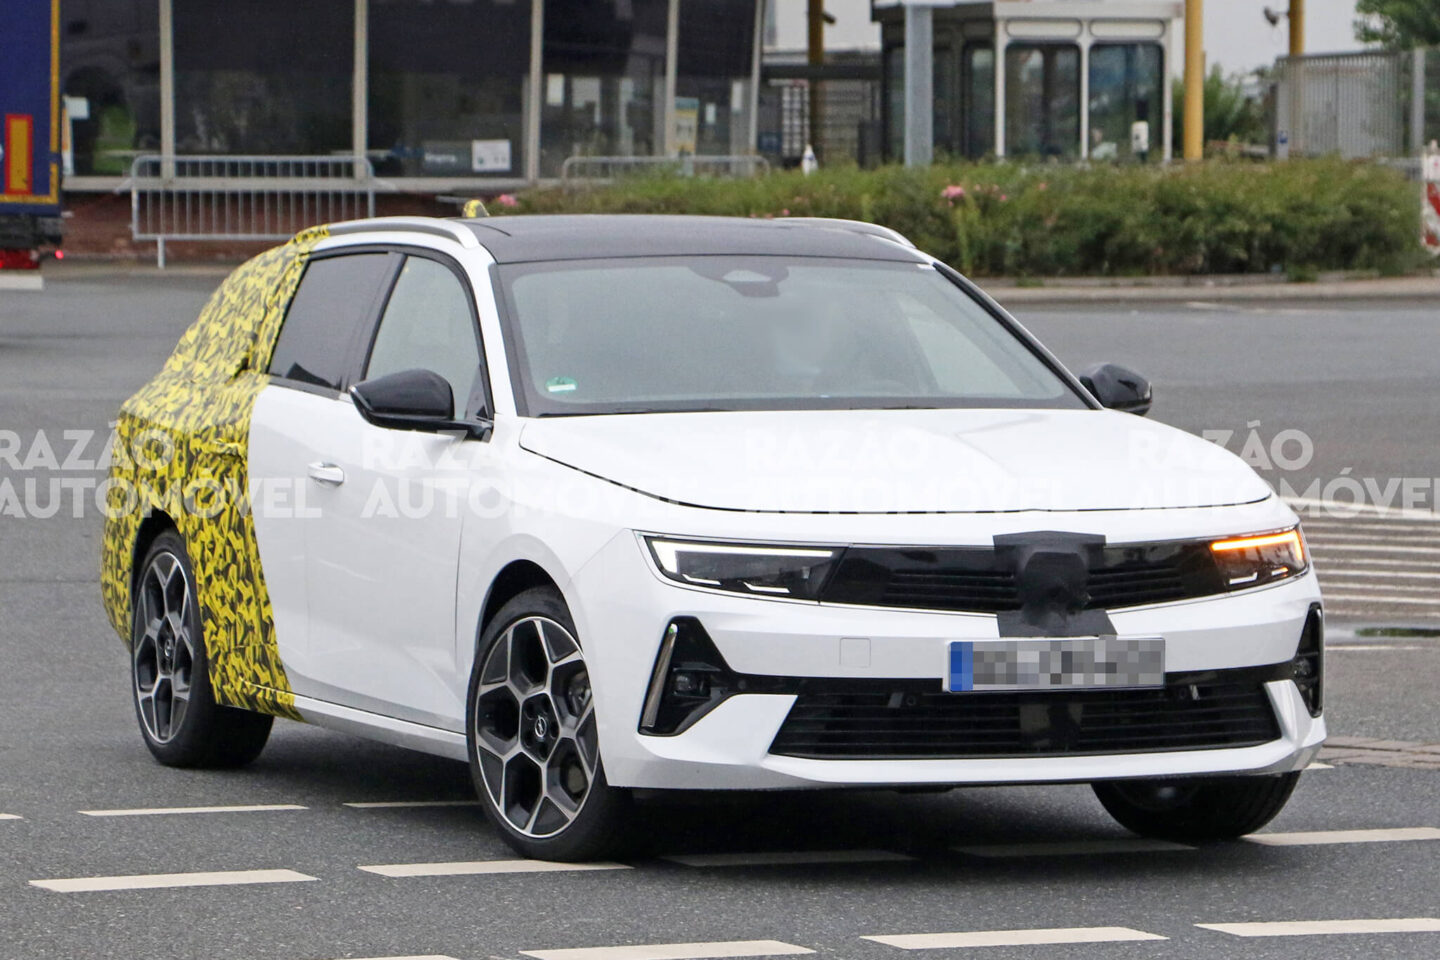 Opel Astra carrinha fotos-espia